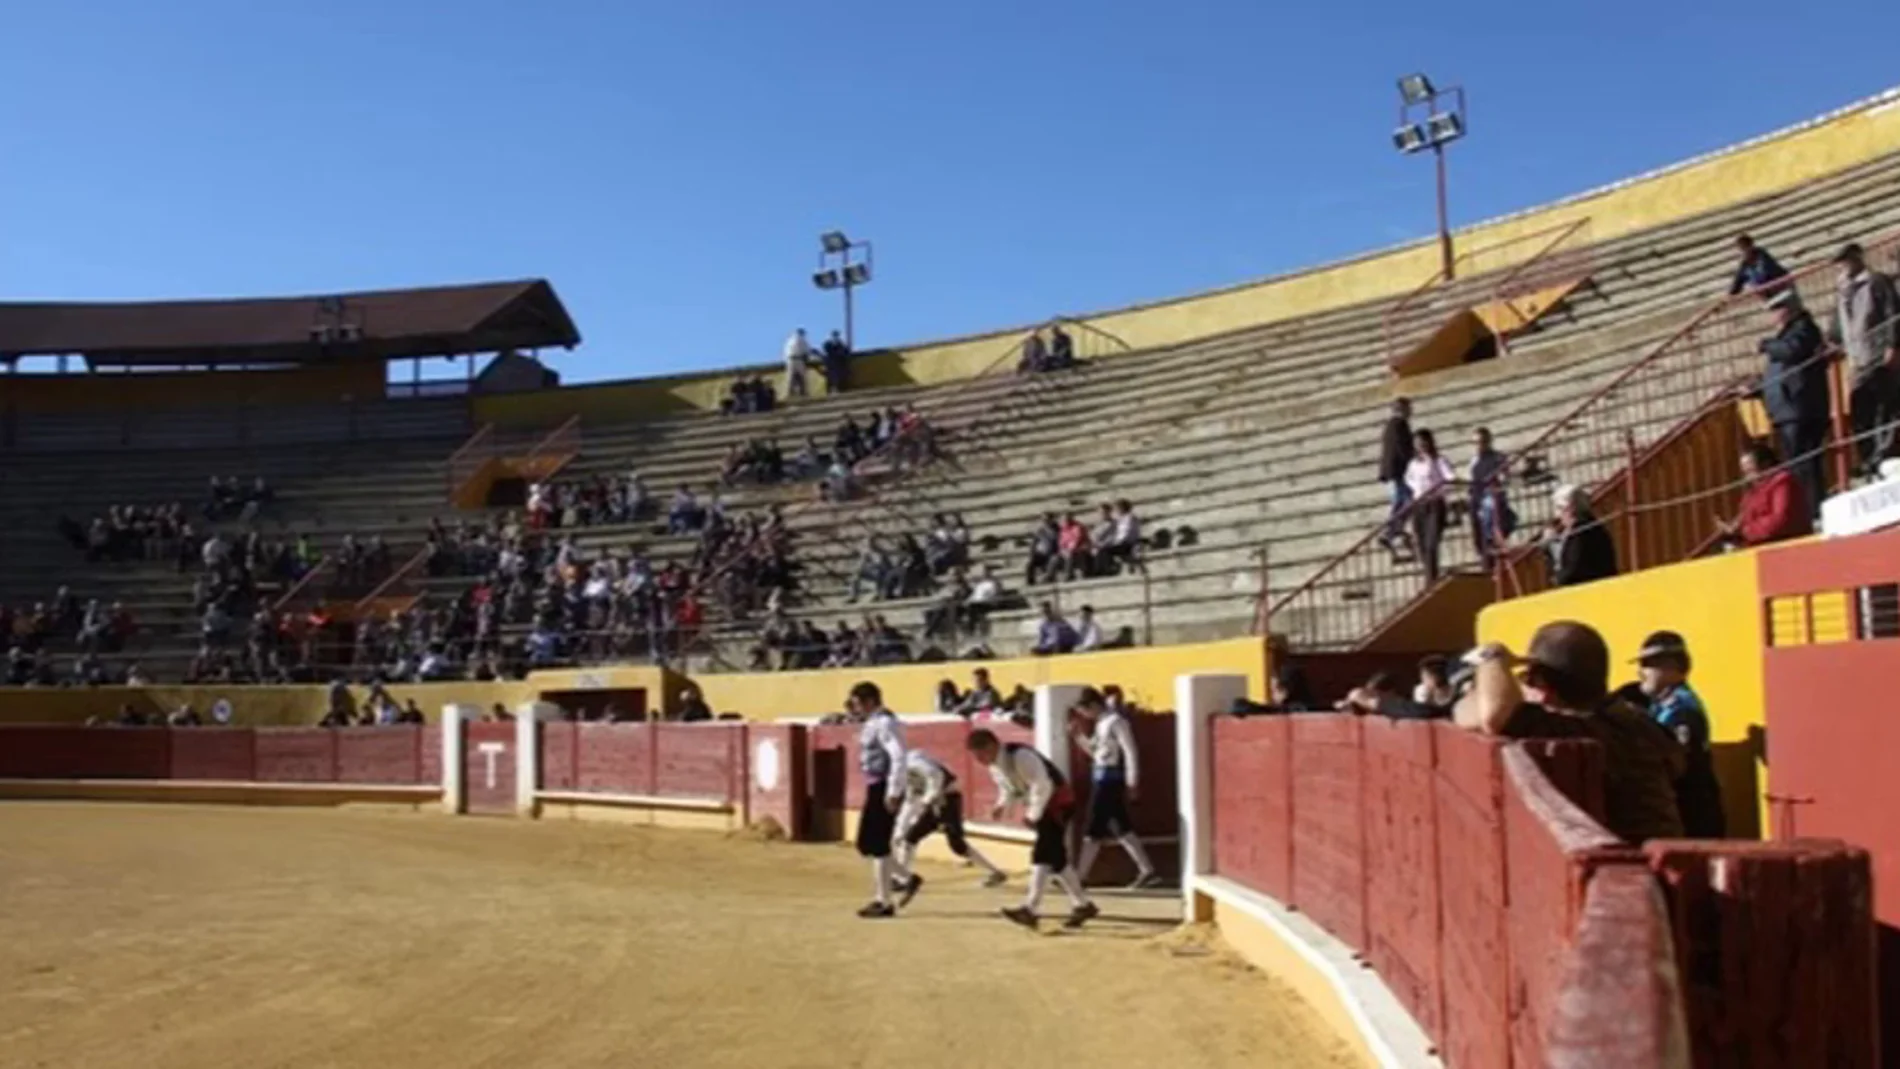 El presidente de la plaza de toros de Ávila compara el toreo con compresas: "Que se note, transpire y traspase"